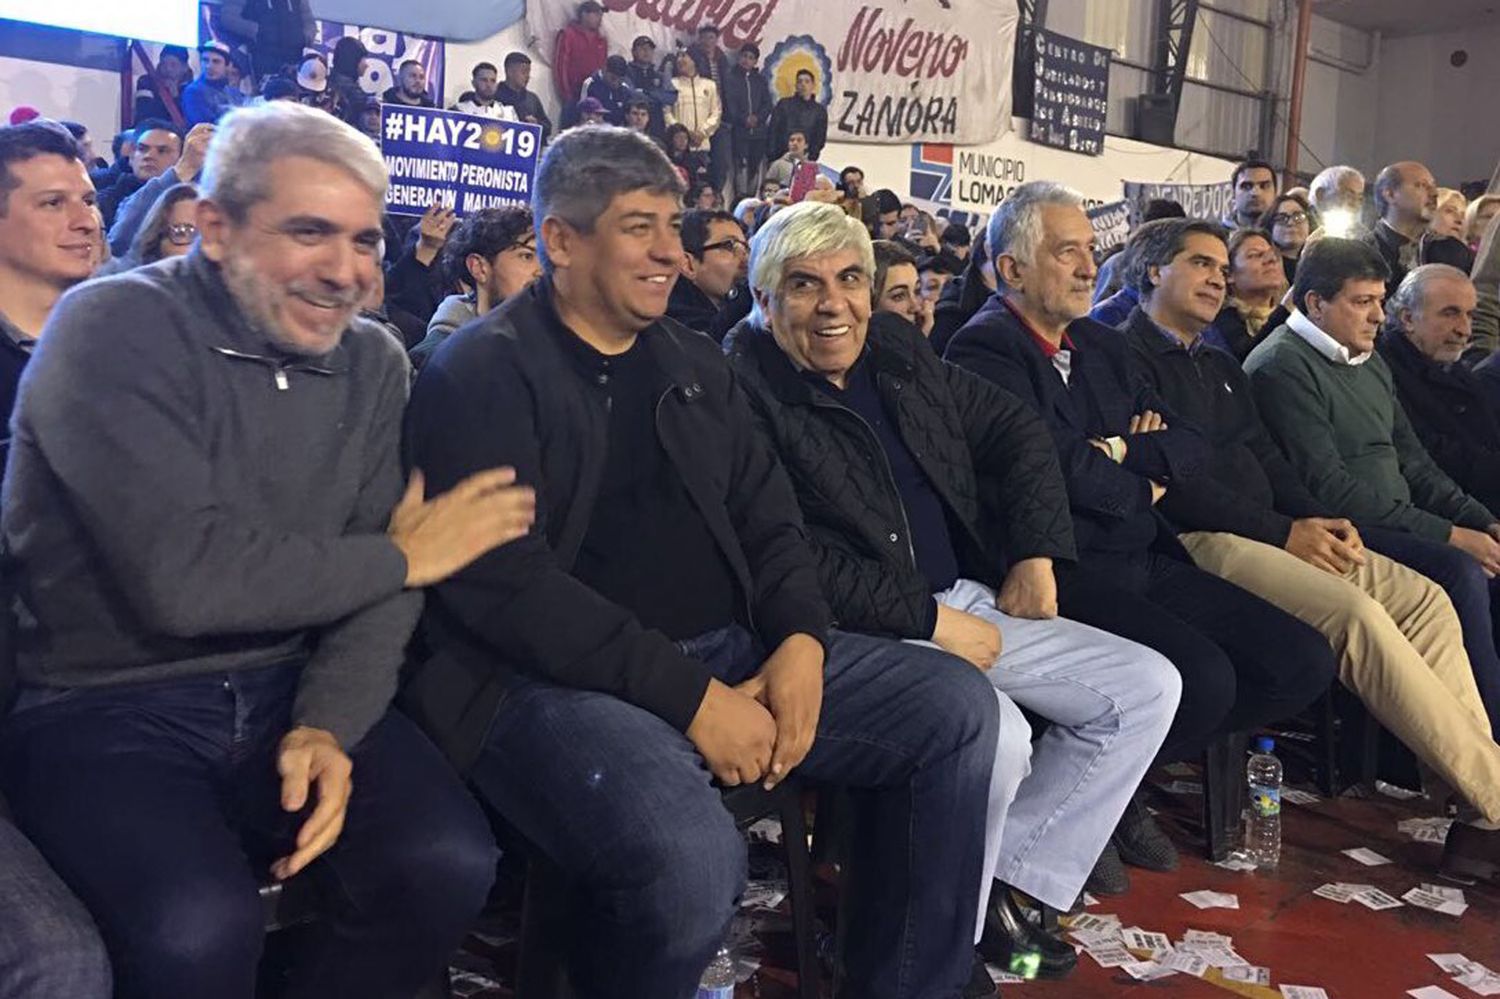 Aníbal Fernández, Moyano y Rodríguez Saá estuvieron en Lomas de Zamora bajo la consigna "Hay 2019"